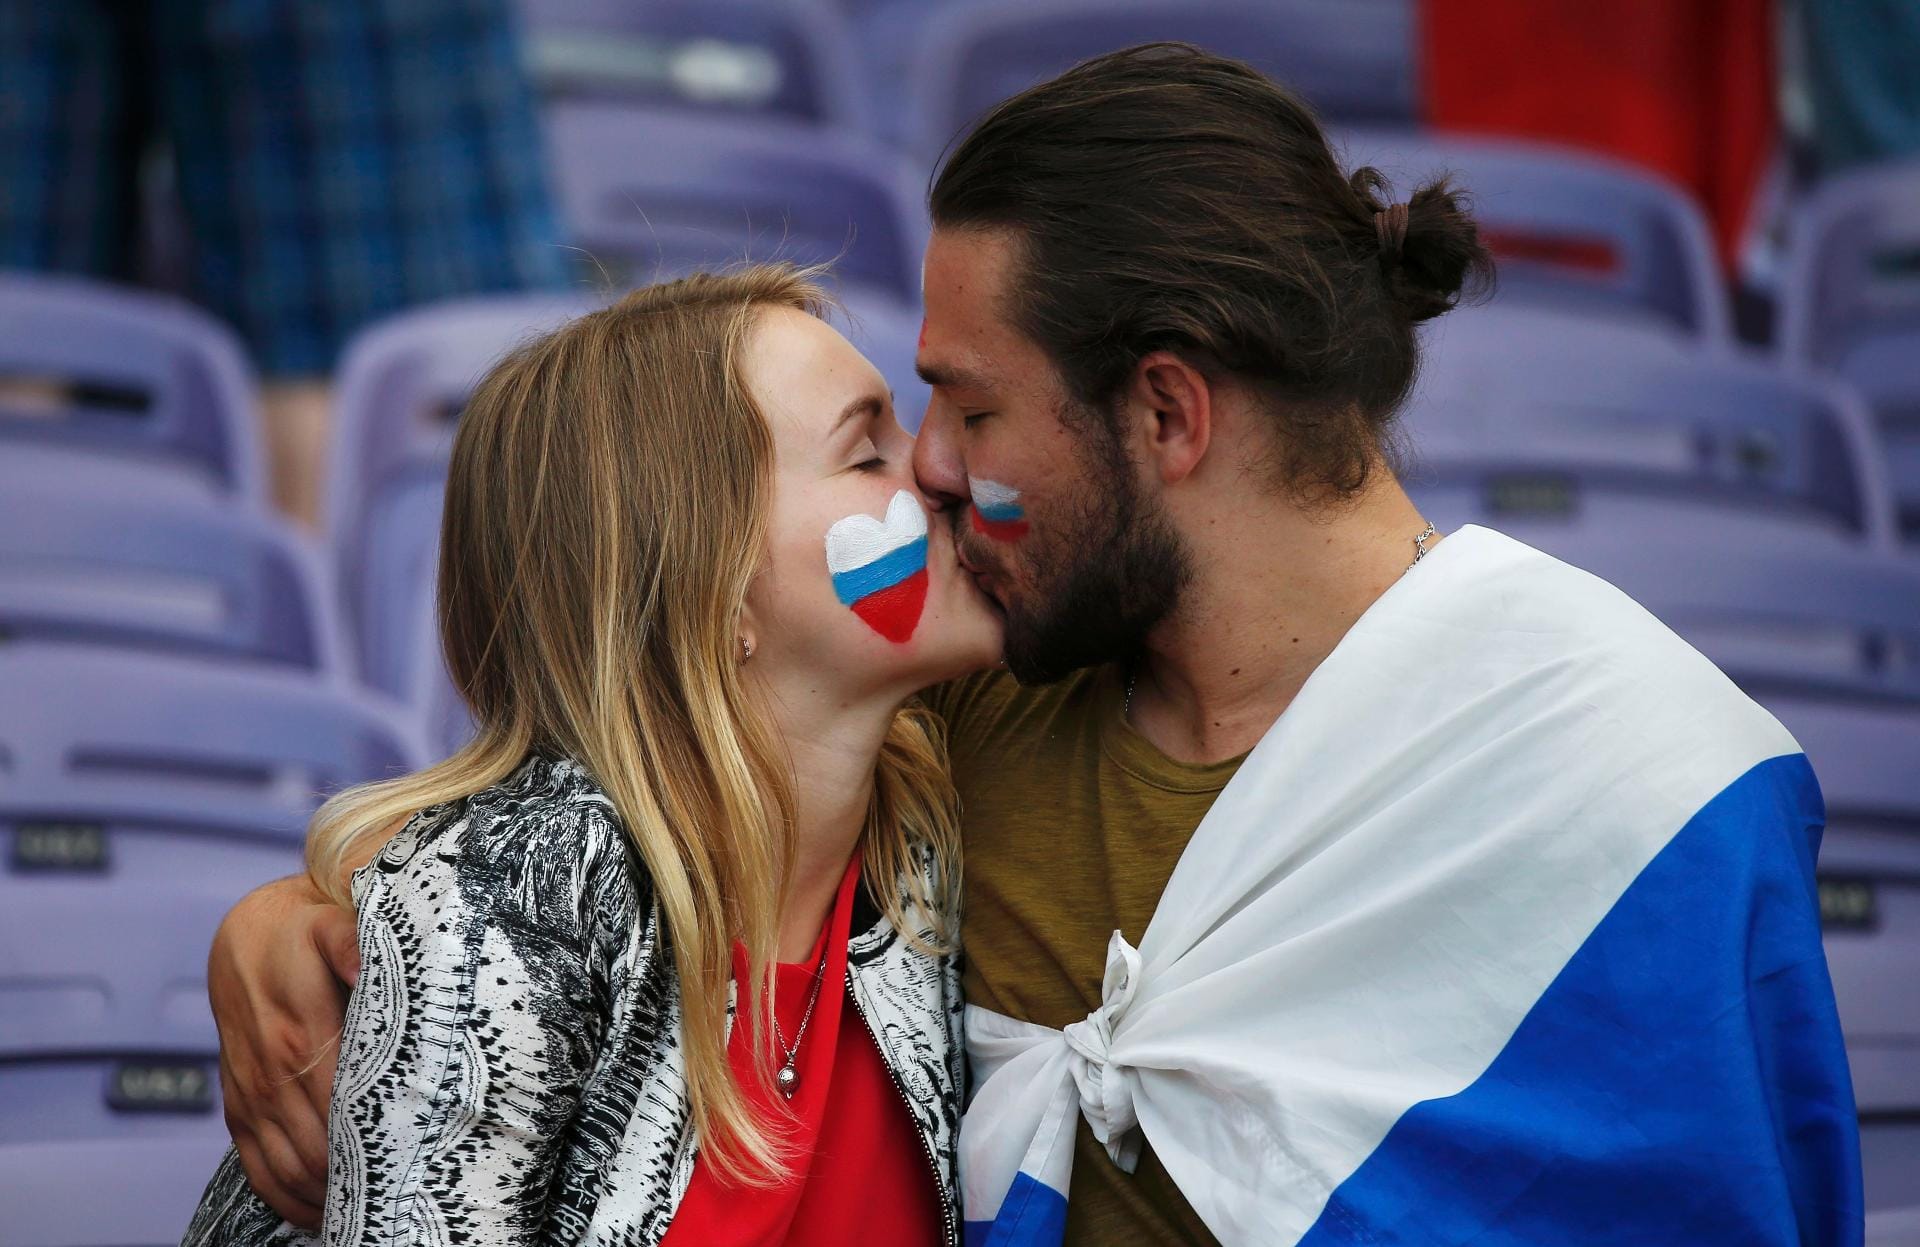 So sehen wir die russischen Fans am liebsten. Heiße Küsse statt brutaler Gewalt, wie vor dem Spiel gegen England.